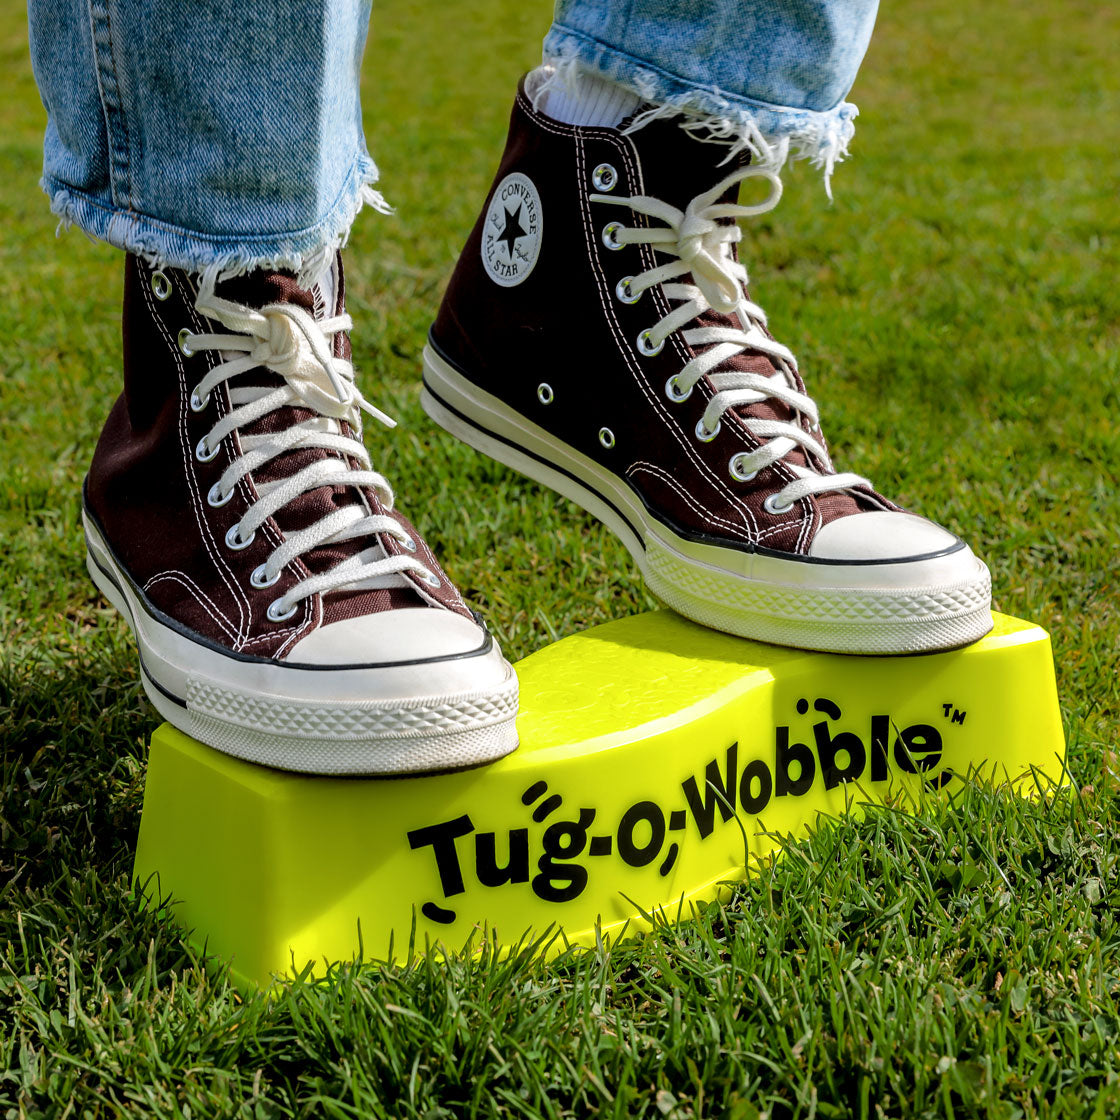 Tug-o-Wobble